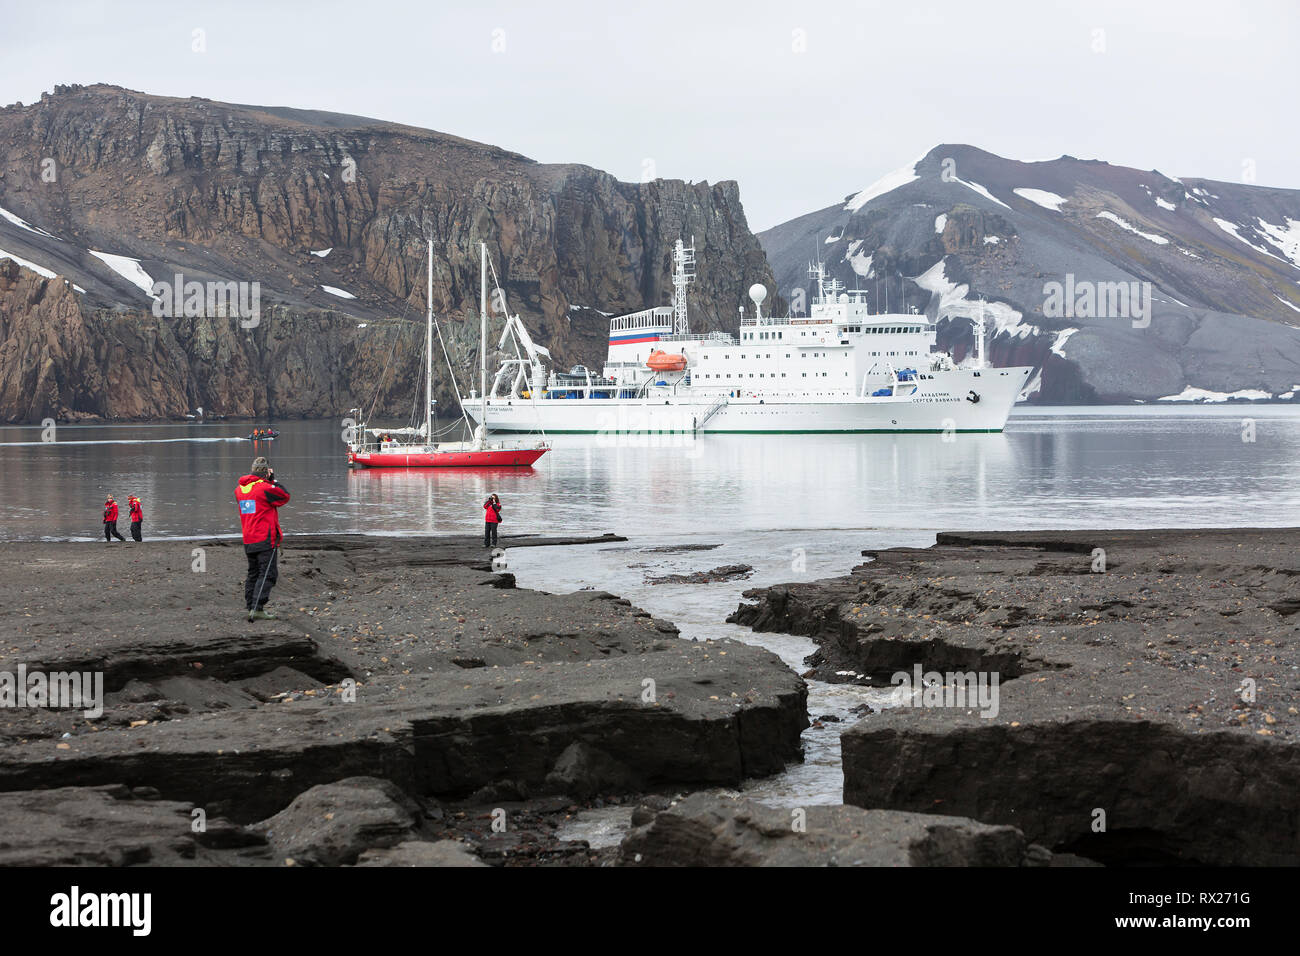 Akademic Vavilov se encuentra en el puerto de Whalers Bay, ubicado dentro de un volcán activo en la Isla Deception, Islas Shetland del Sur, Antártida Foto de stock